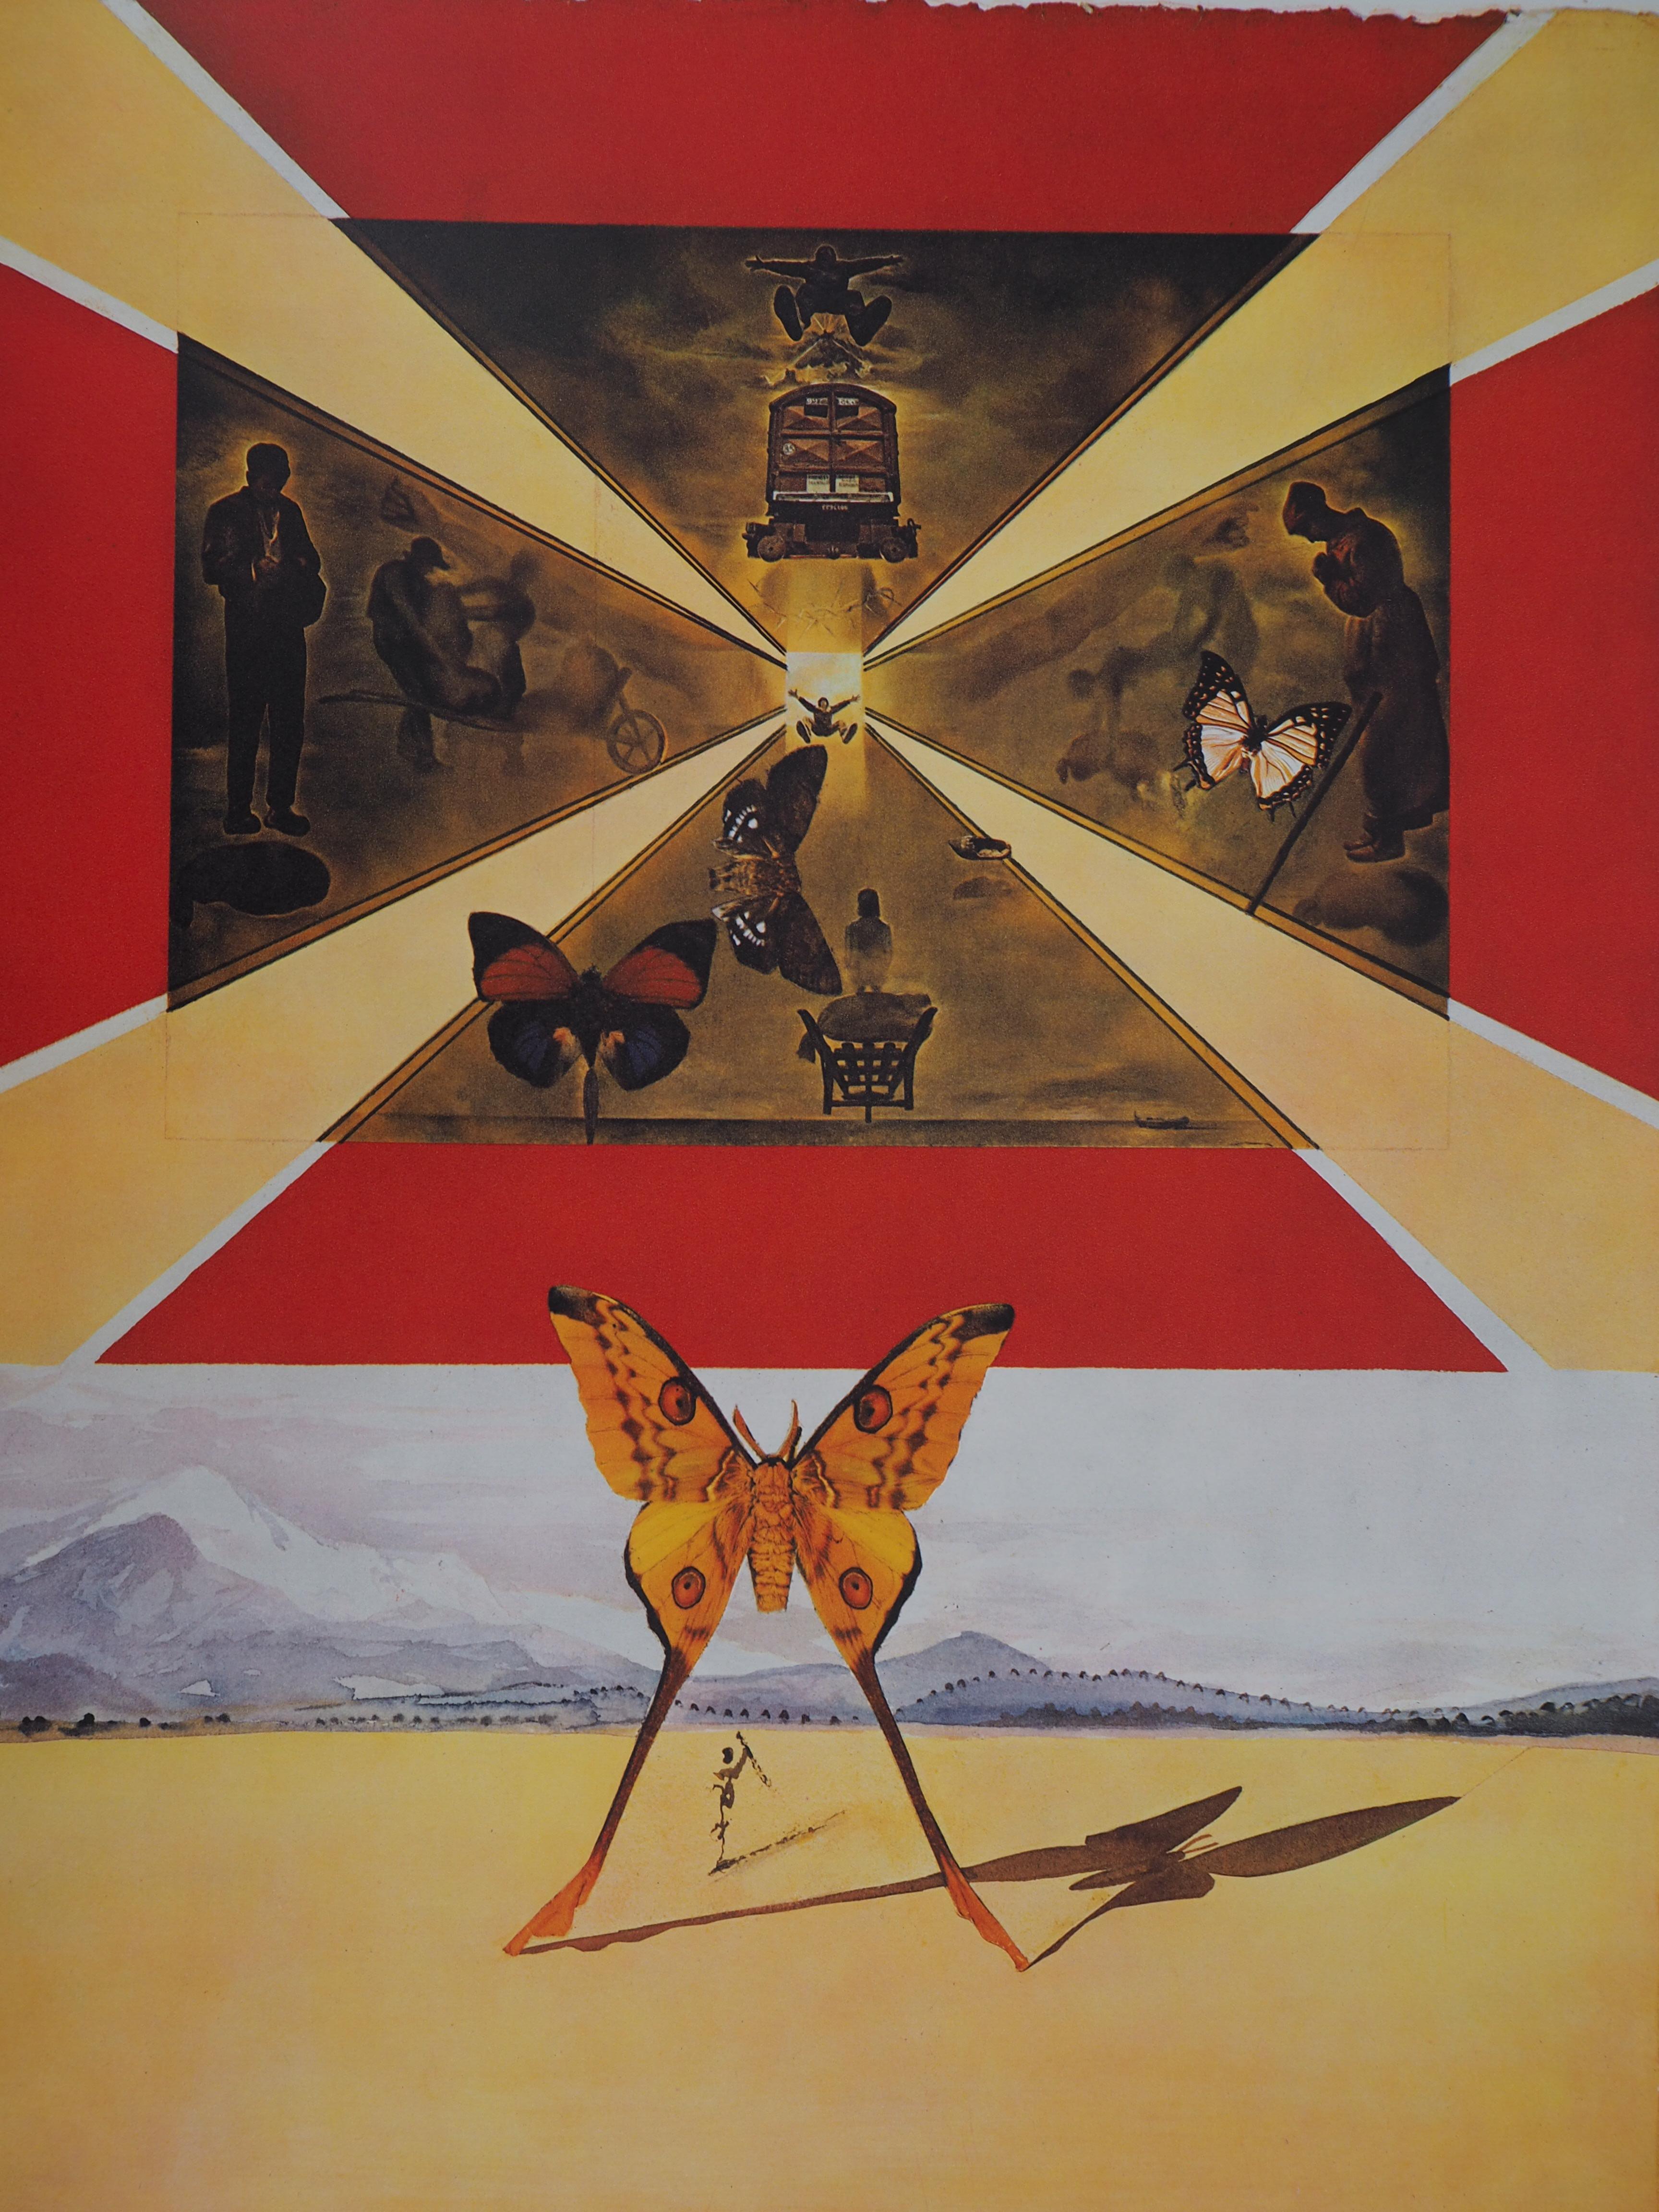 Schmetterlingsgarnitur: Roussillon – Heliogravur – 1969 (Abb. #69-2 E) (Surrealismus), Print, von Salvador Dalí